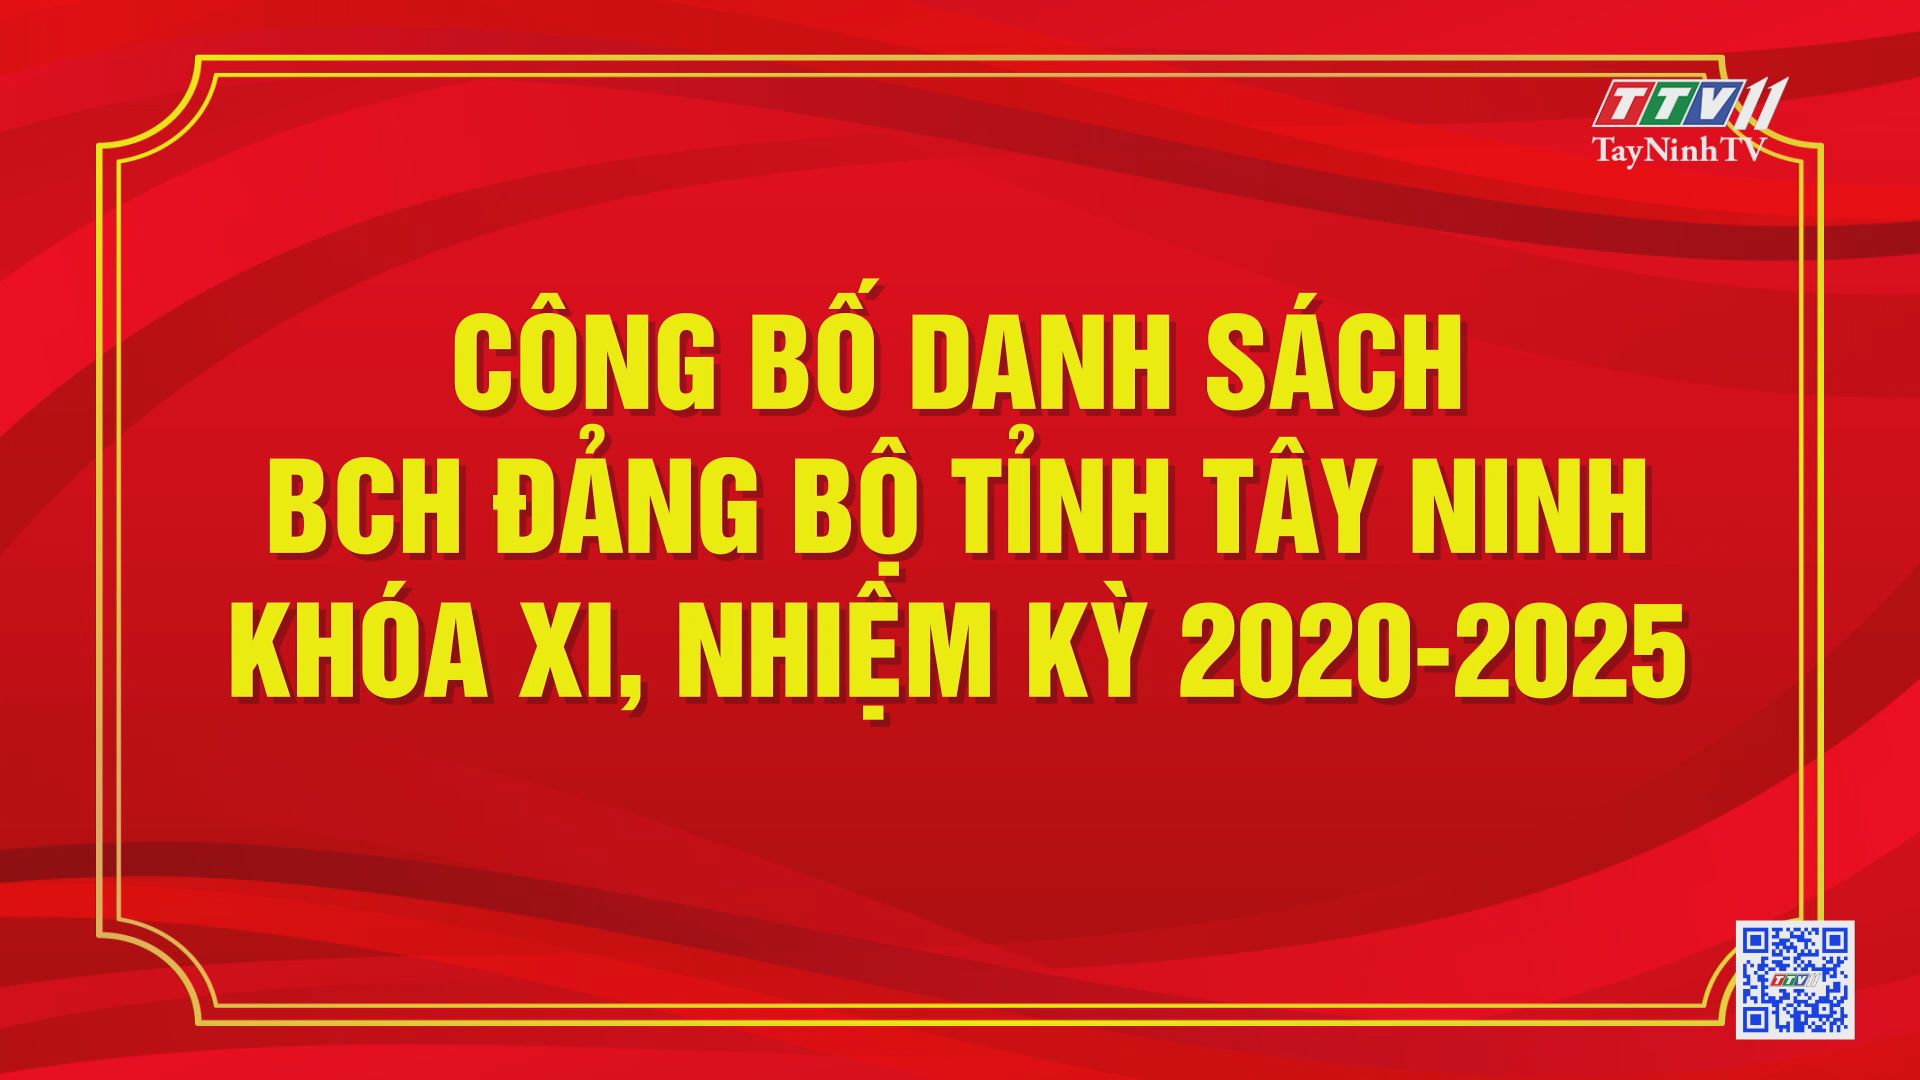 Công bố danh sách BCH Đảng bộ tỉnh Tây Ninh khóa XI, nhiệm kỳ 2020-2025 | ĐẠI HỘI ĐẢNG BỘ CÁC CẤP | TayNinhTV